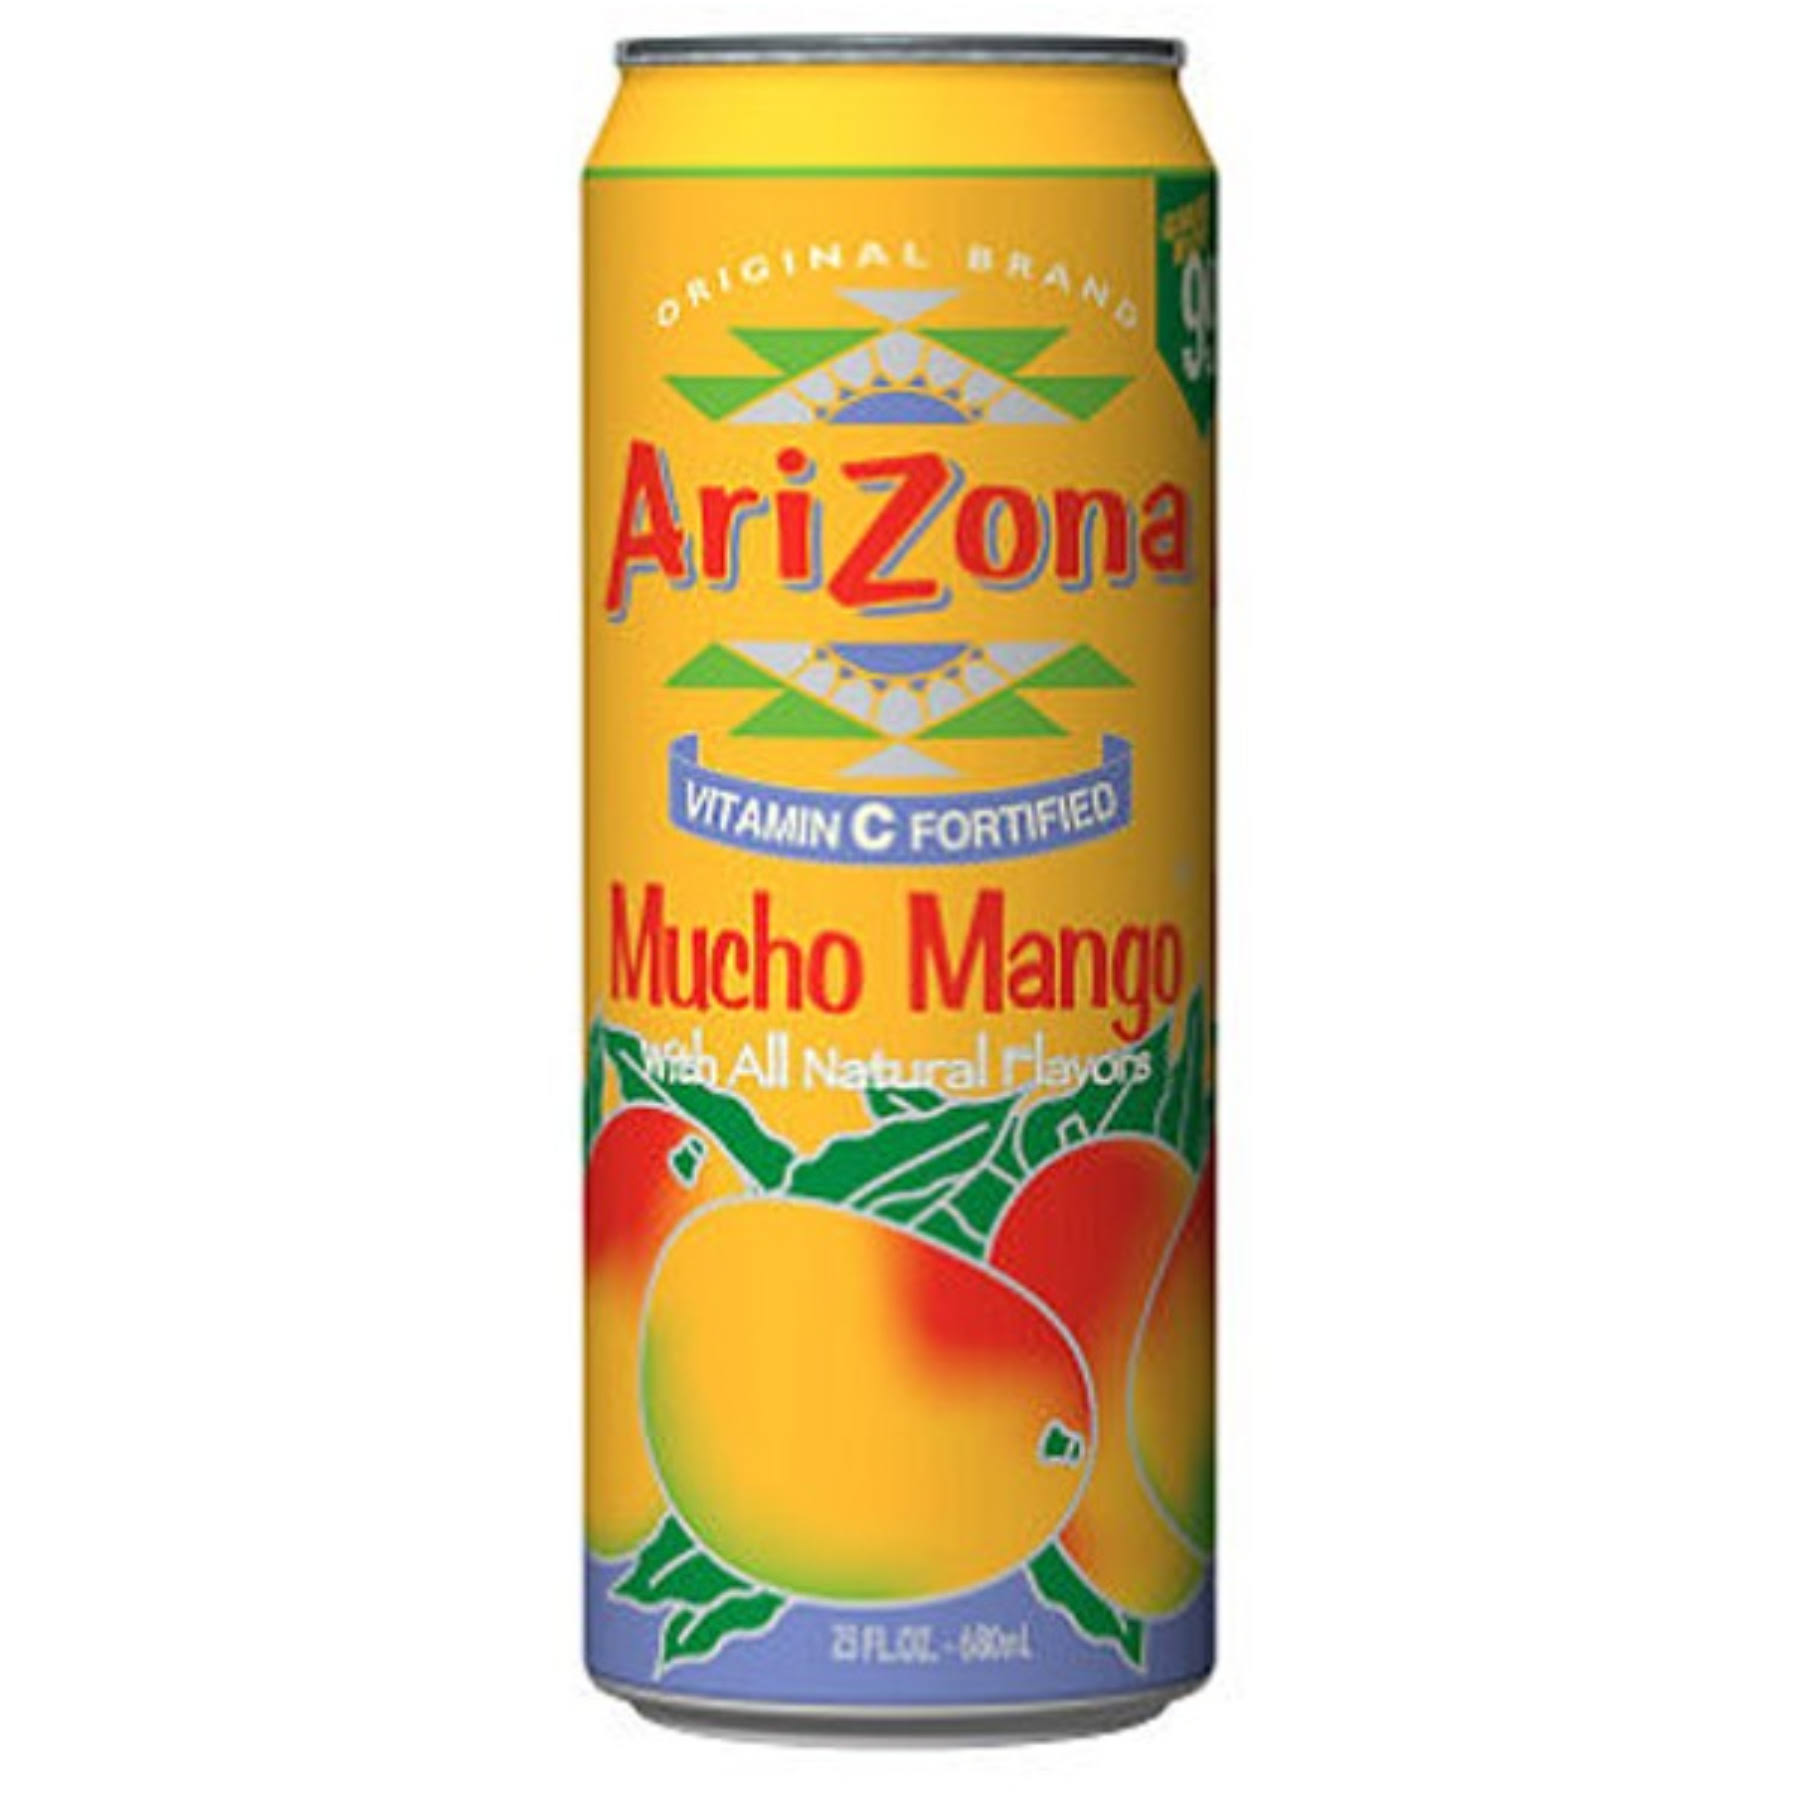 Arizona Fruit Juice Cocktail - Mucho Mango, 23oz